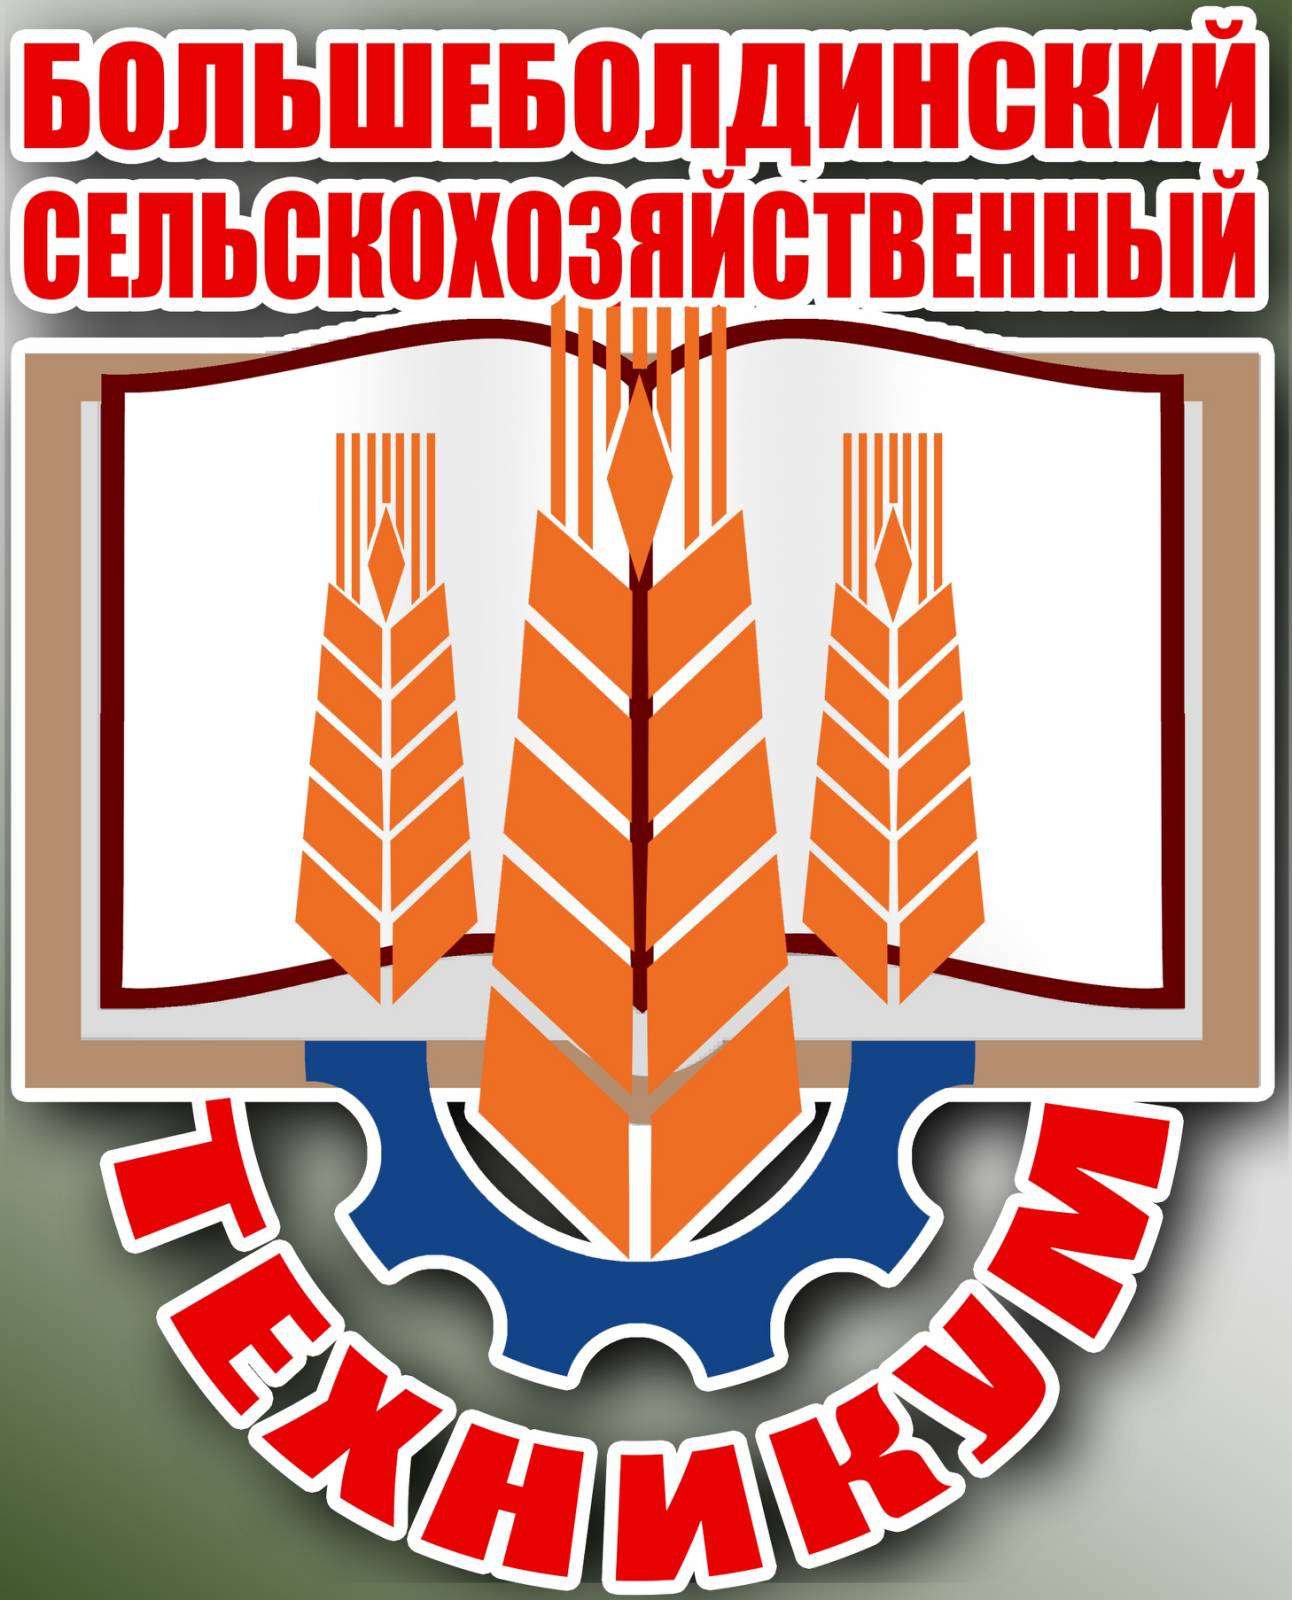 ГБПОУ «Большеболдинский сельскохозяйственный техникум»